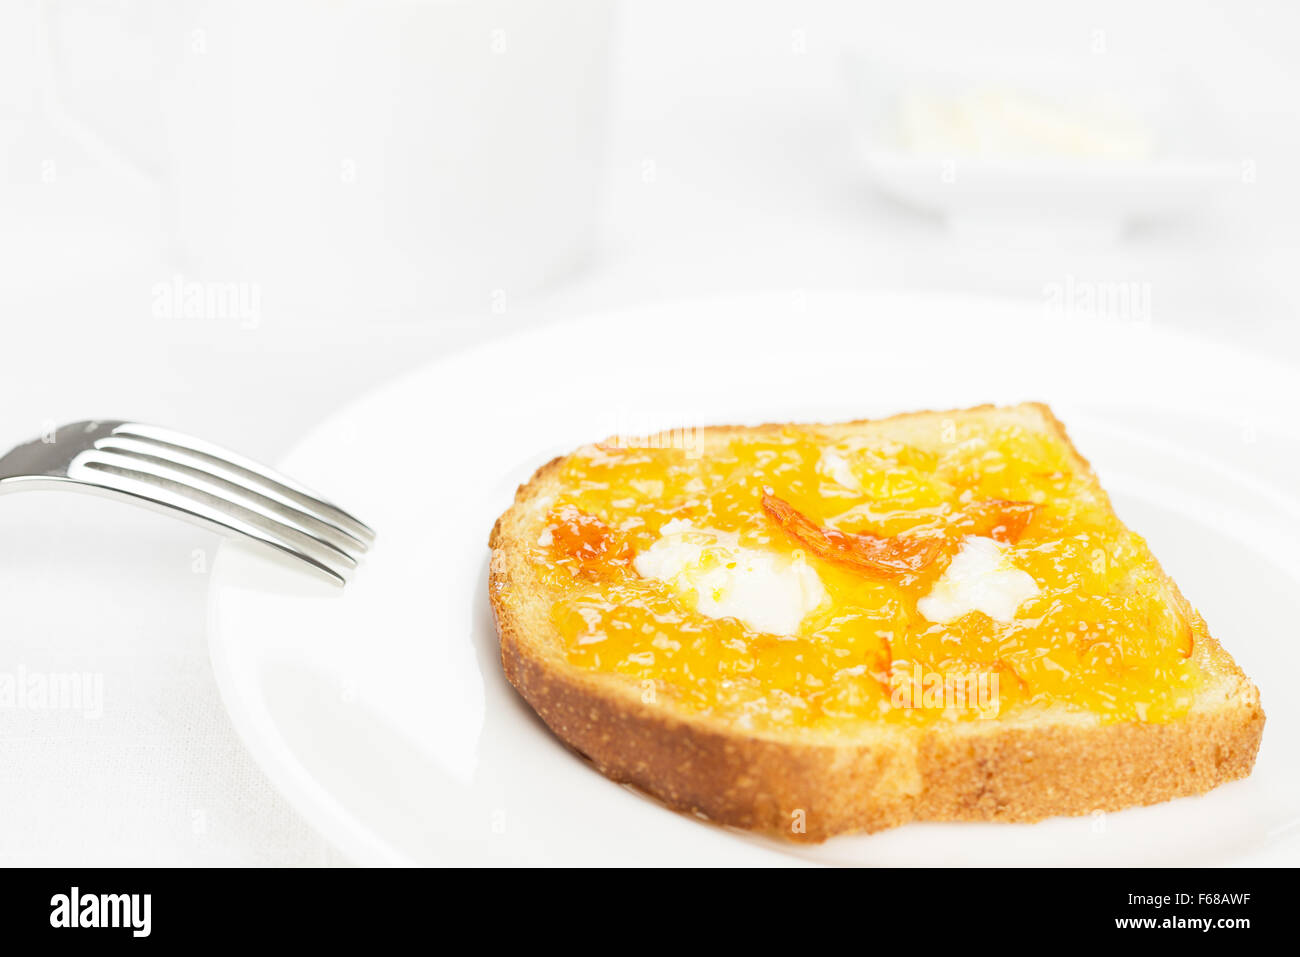 La prima colazione. Toast alla francese con diffusione di arancia amara marmellata o confettura con frutta candita, riccioli di burro, forcella sullo sfondo e una tazza Foto Stock